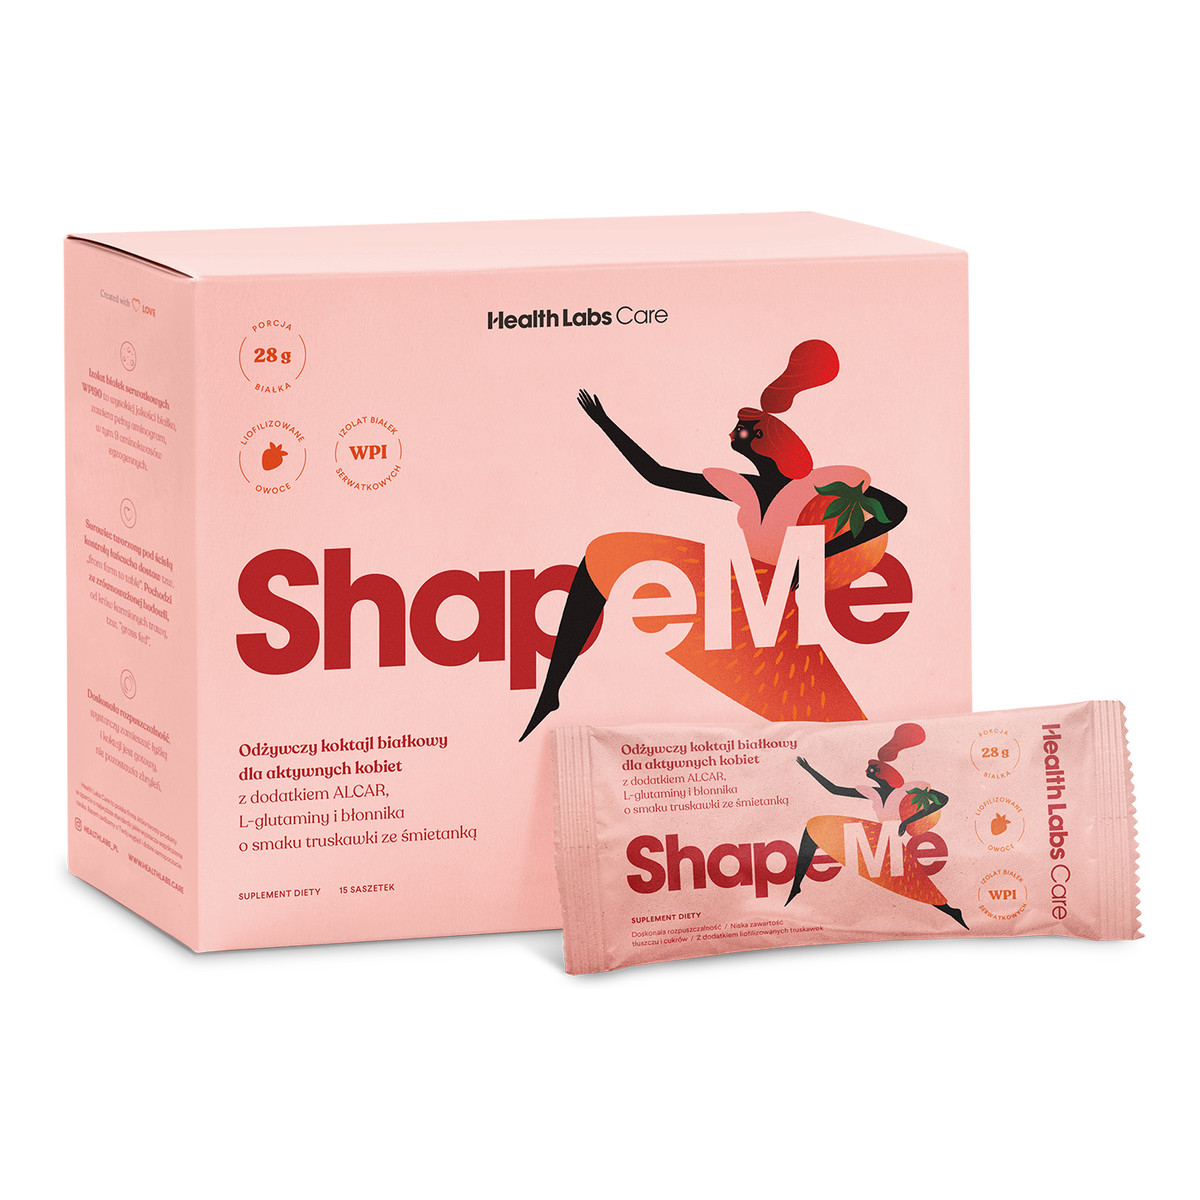 HealthLabs Shapeme odżywczy koktajl białkowy dla aktywnych kobiet suplement diety truskawka ze śmietanką 15 saszetek